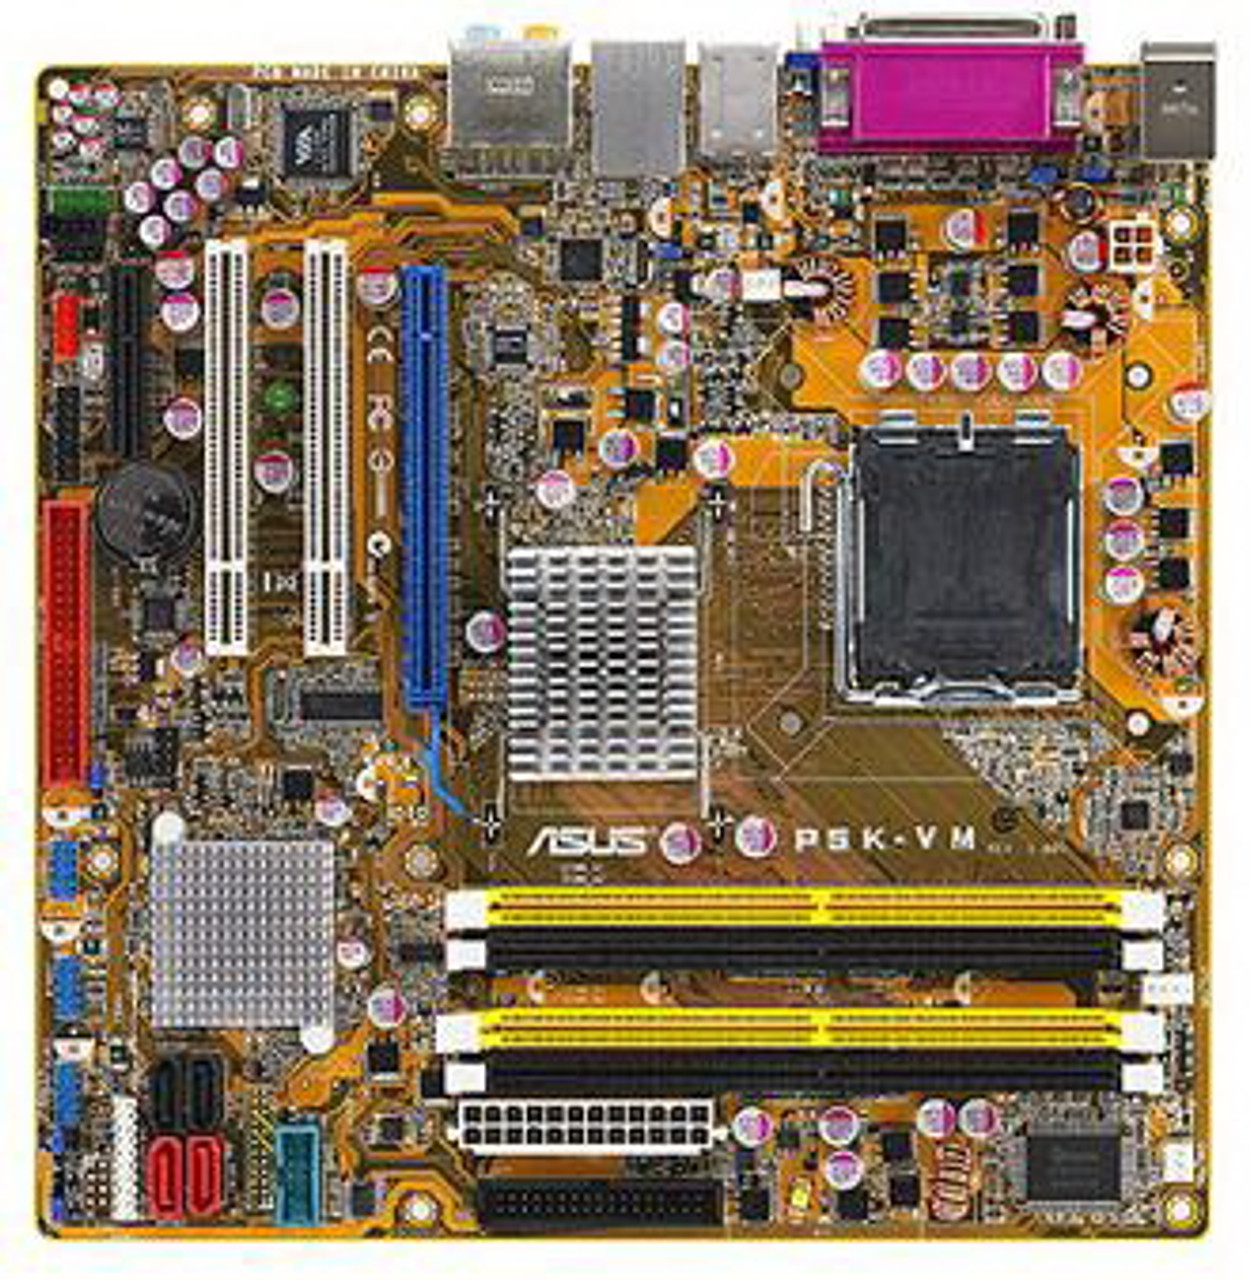 P5K-VM - ASUS Intel G33/ ICH9 Chipset Core 2 Quad/ Core 2 Extreme/ Core 2 Duo/ Pentium Extreme/ Pentium D/ Pentium 4 Processors Support Socket 775 mi